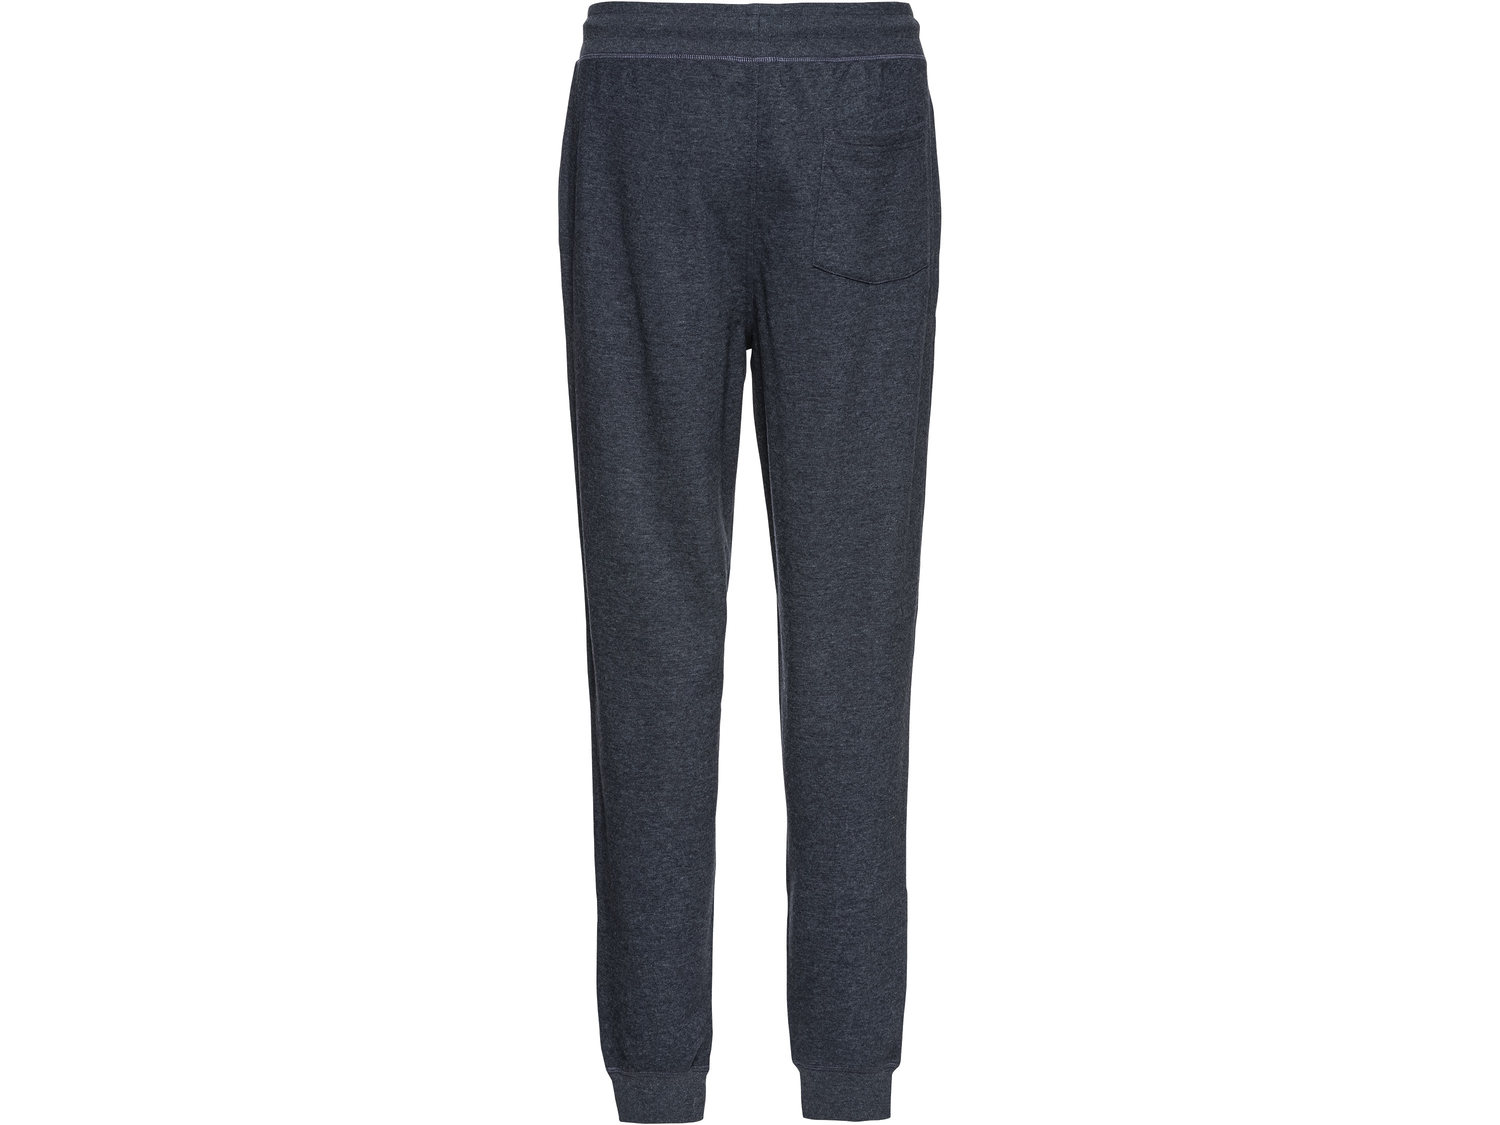 Spodnie dresowe Livergy, cena 34,99 PLN 
- wysoka zawartość bawełny
- rozmiary: ...